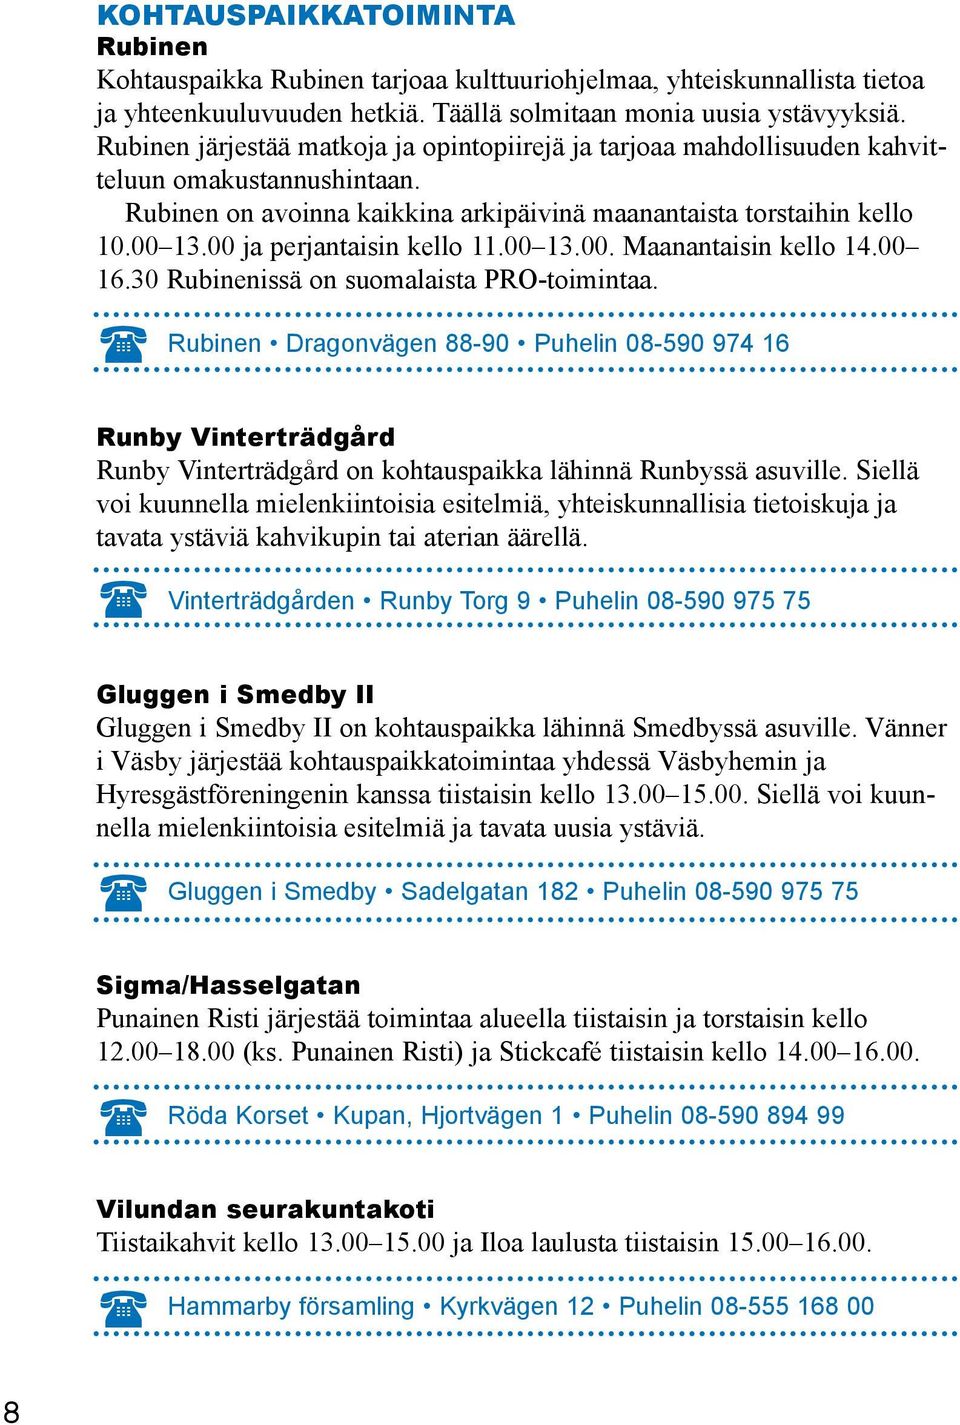 00 ja perjantaisin kello 11.00 13.00. Maanantaisin kello 14.00 16.30 Rubinenissä on suomalaista PRO-toimintaa.